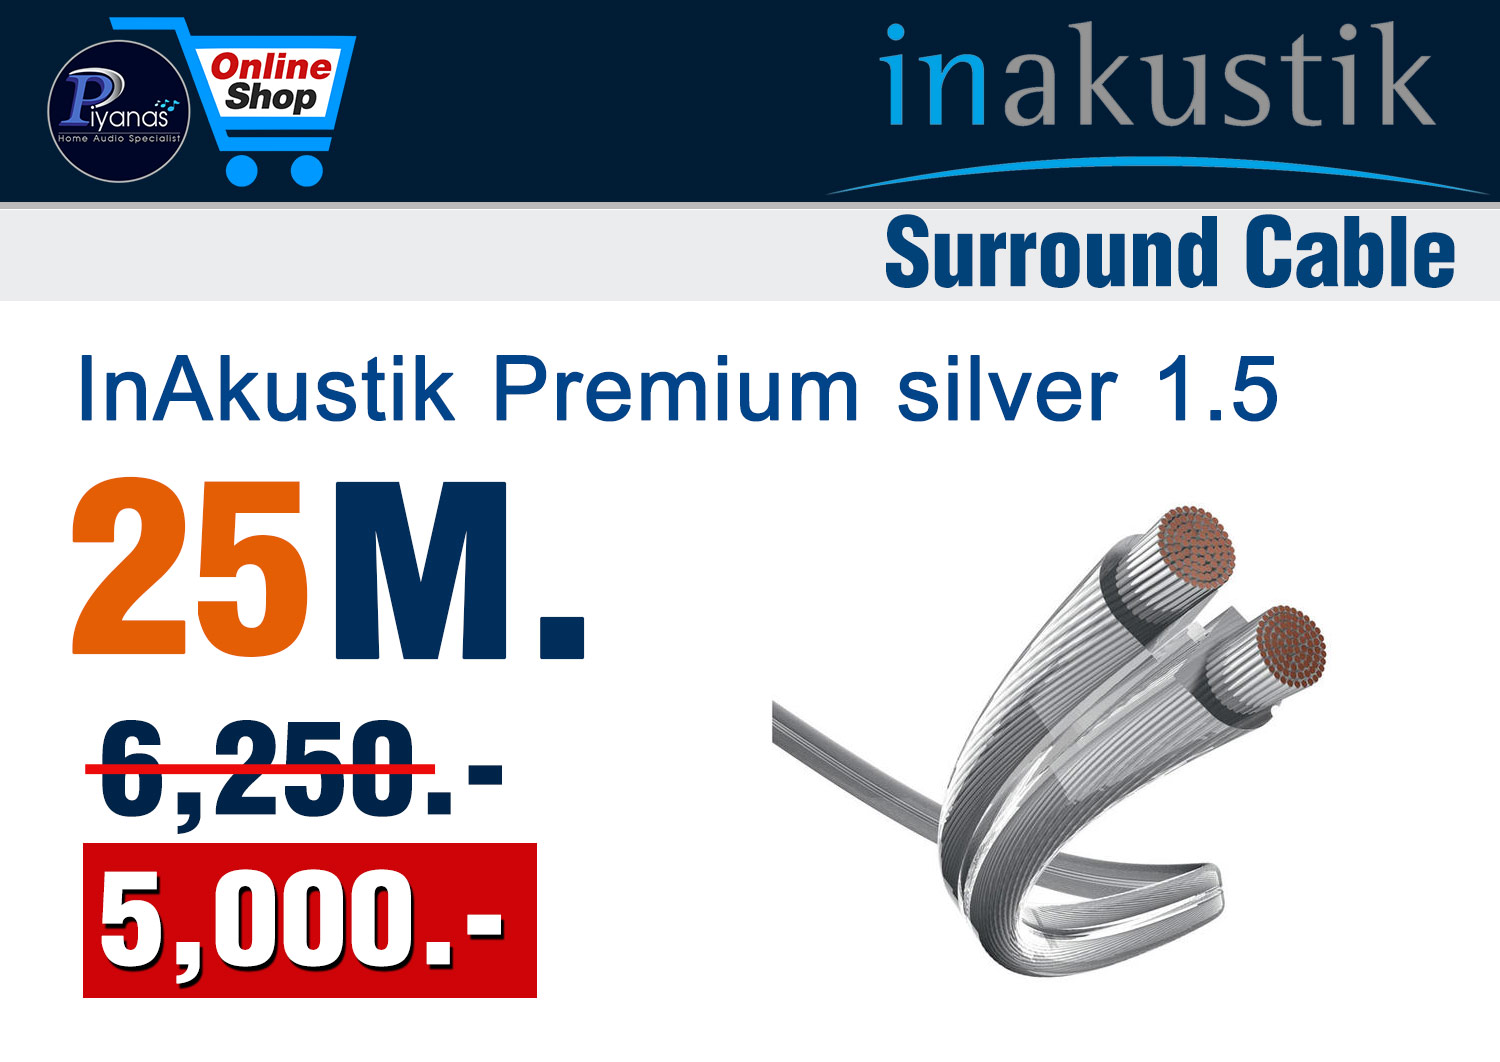 Monitor Premium silver 1.5 (25M.)